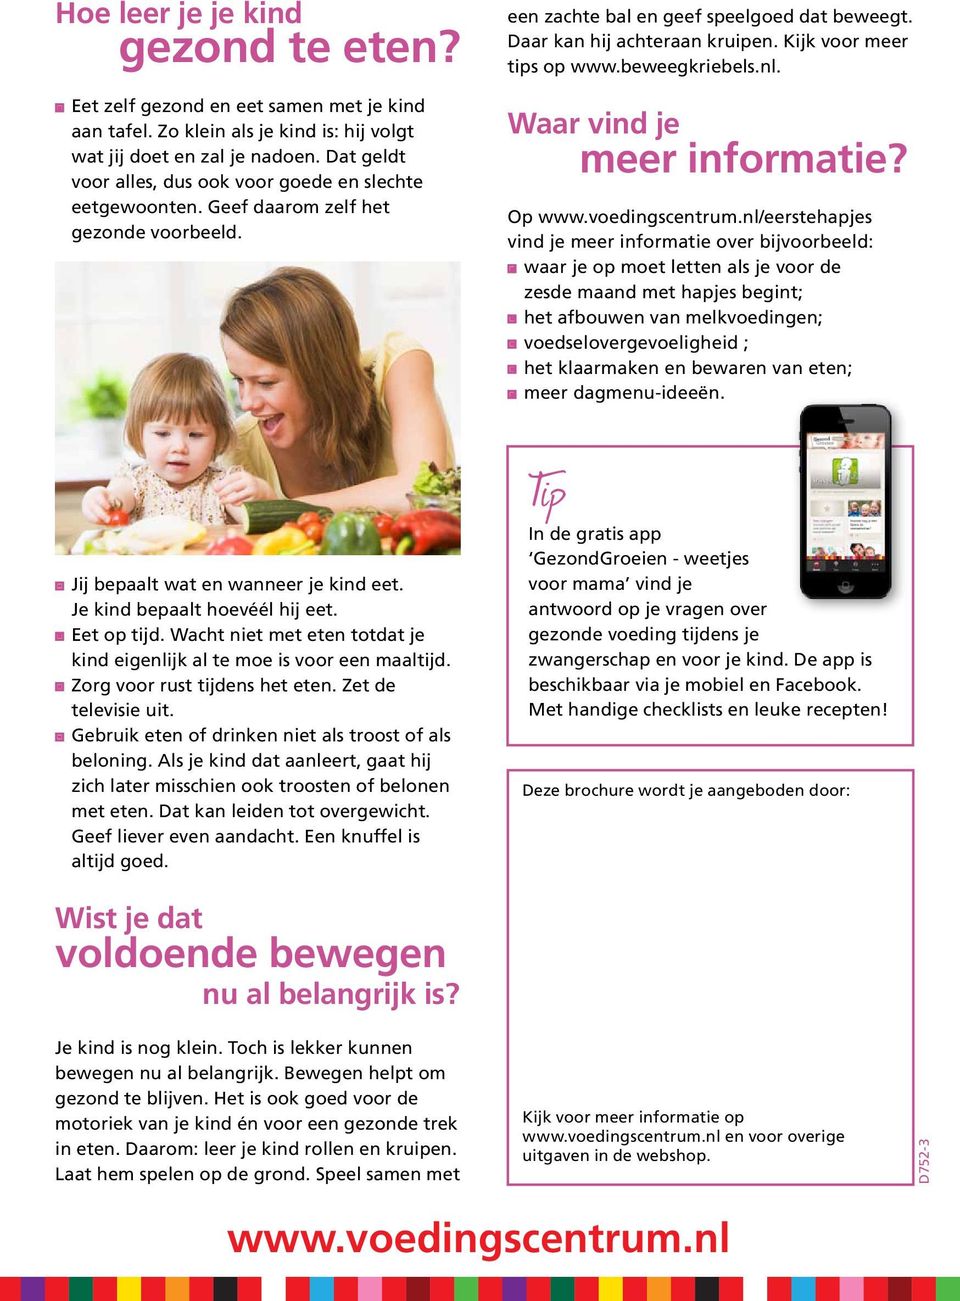 Kijk voor meer tips op www.beweegkriebels.nl. Waar vind je meer informatie? Op www.voedingscentrum.